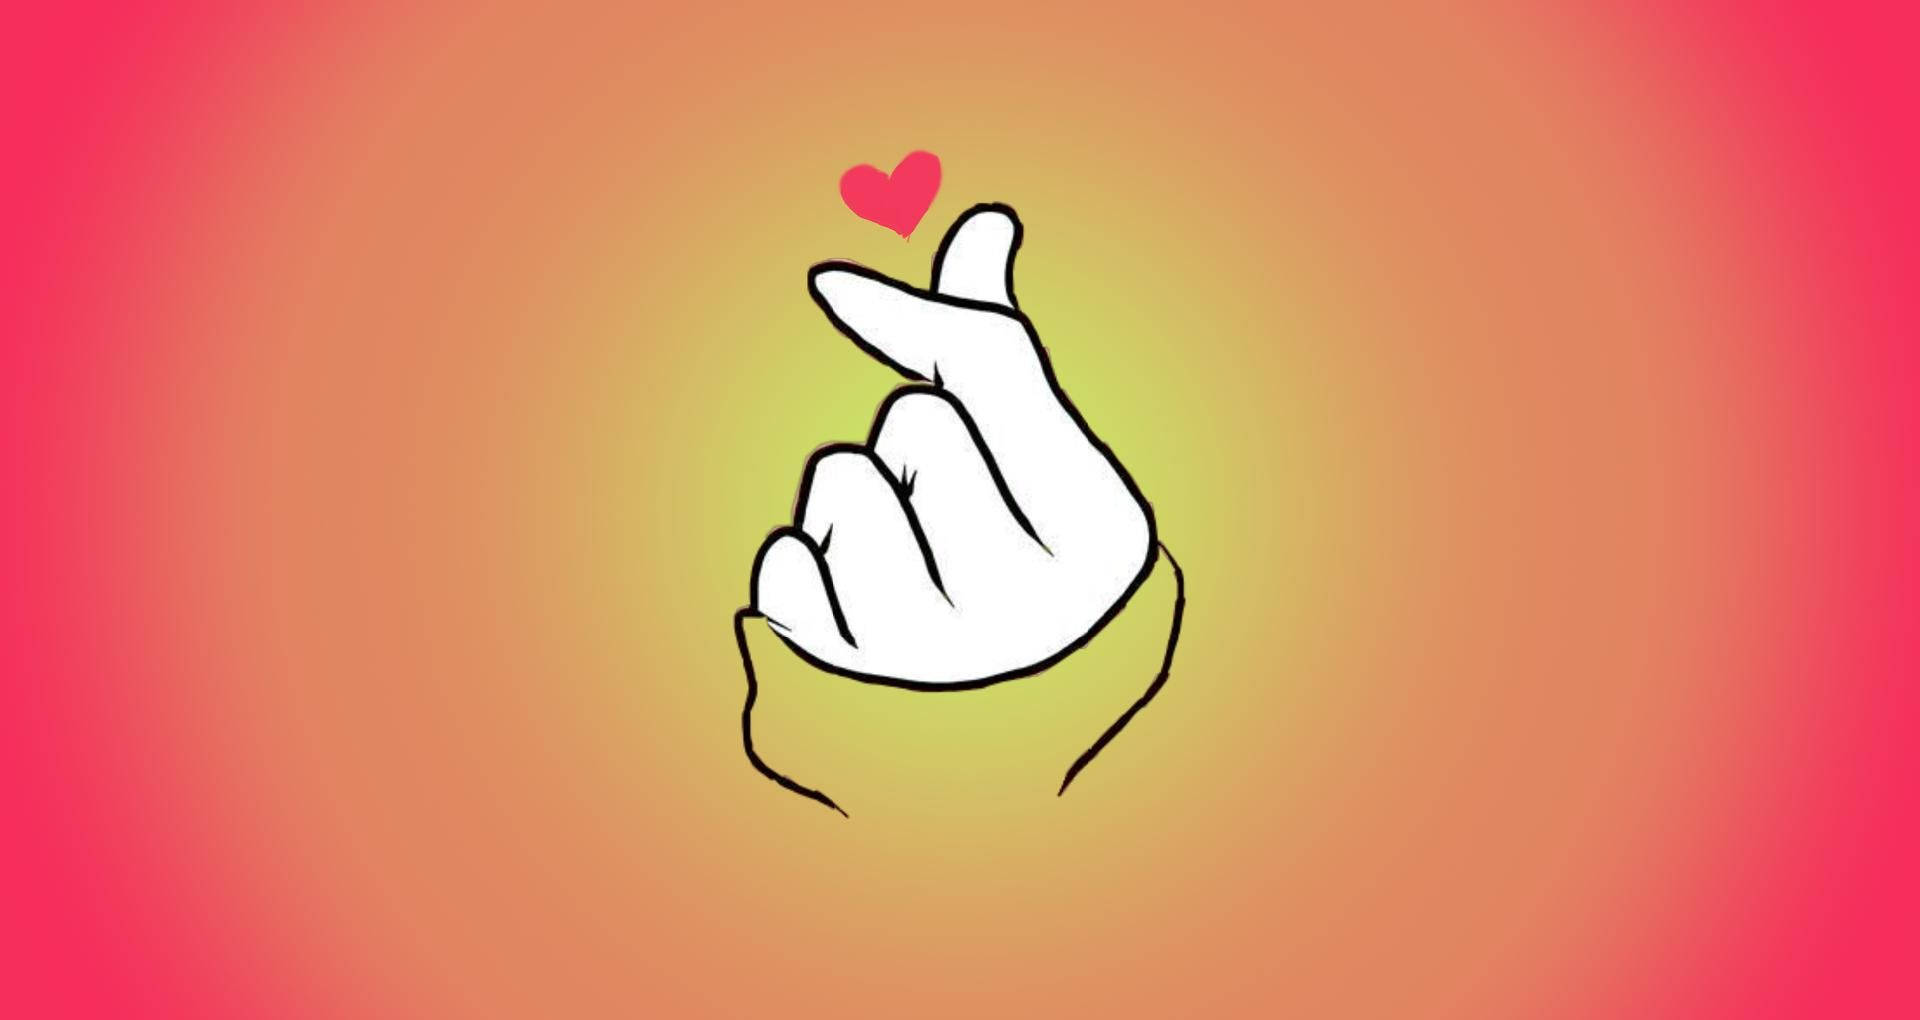 Korean Finger Heart Symbol Picture